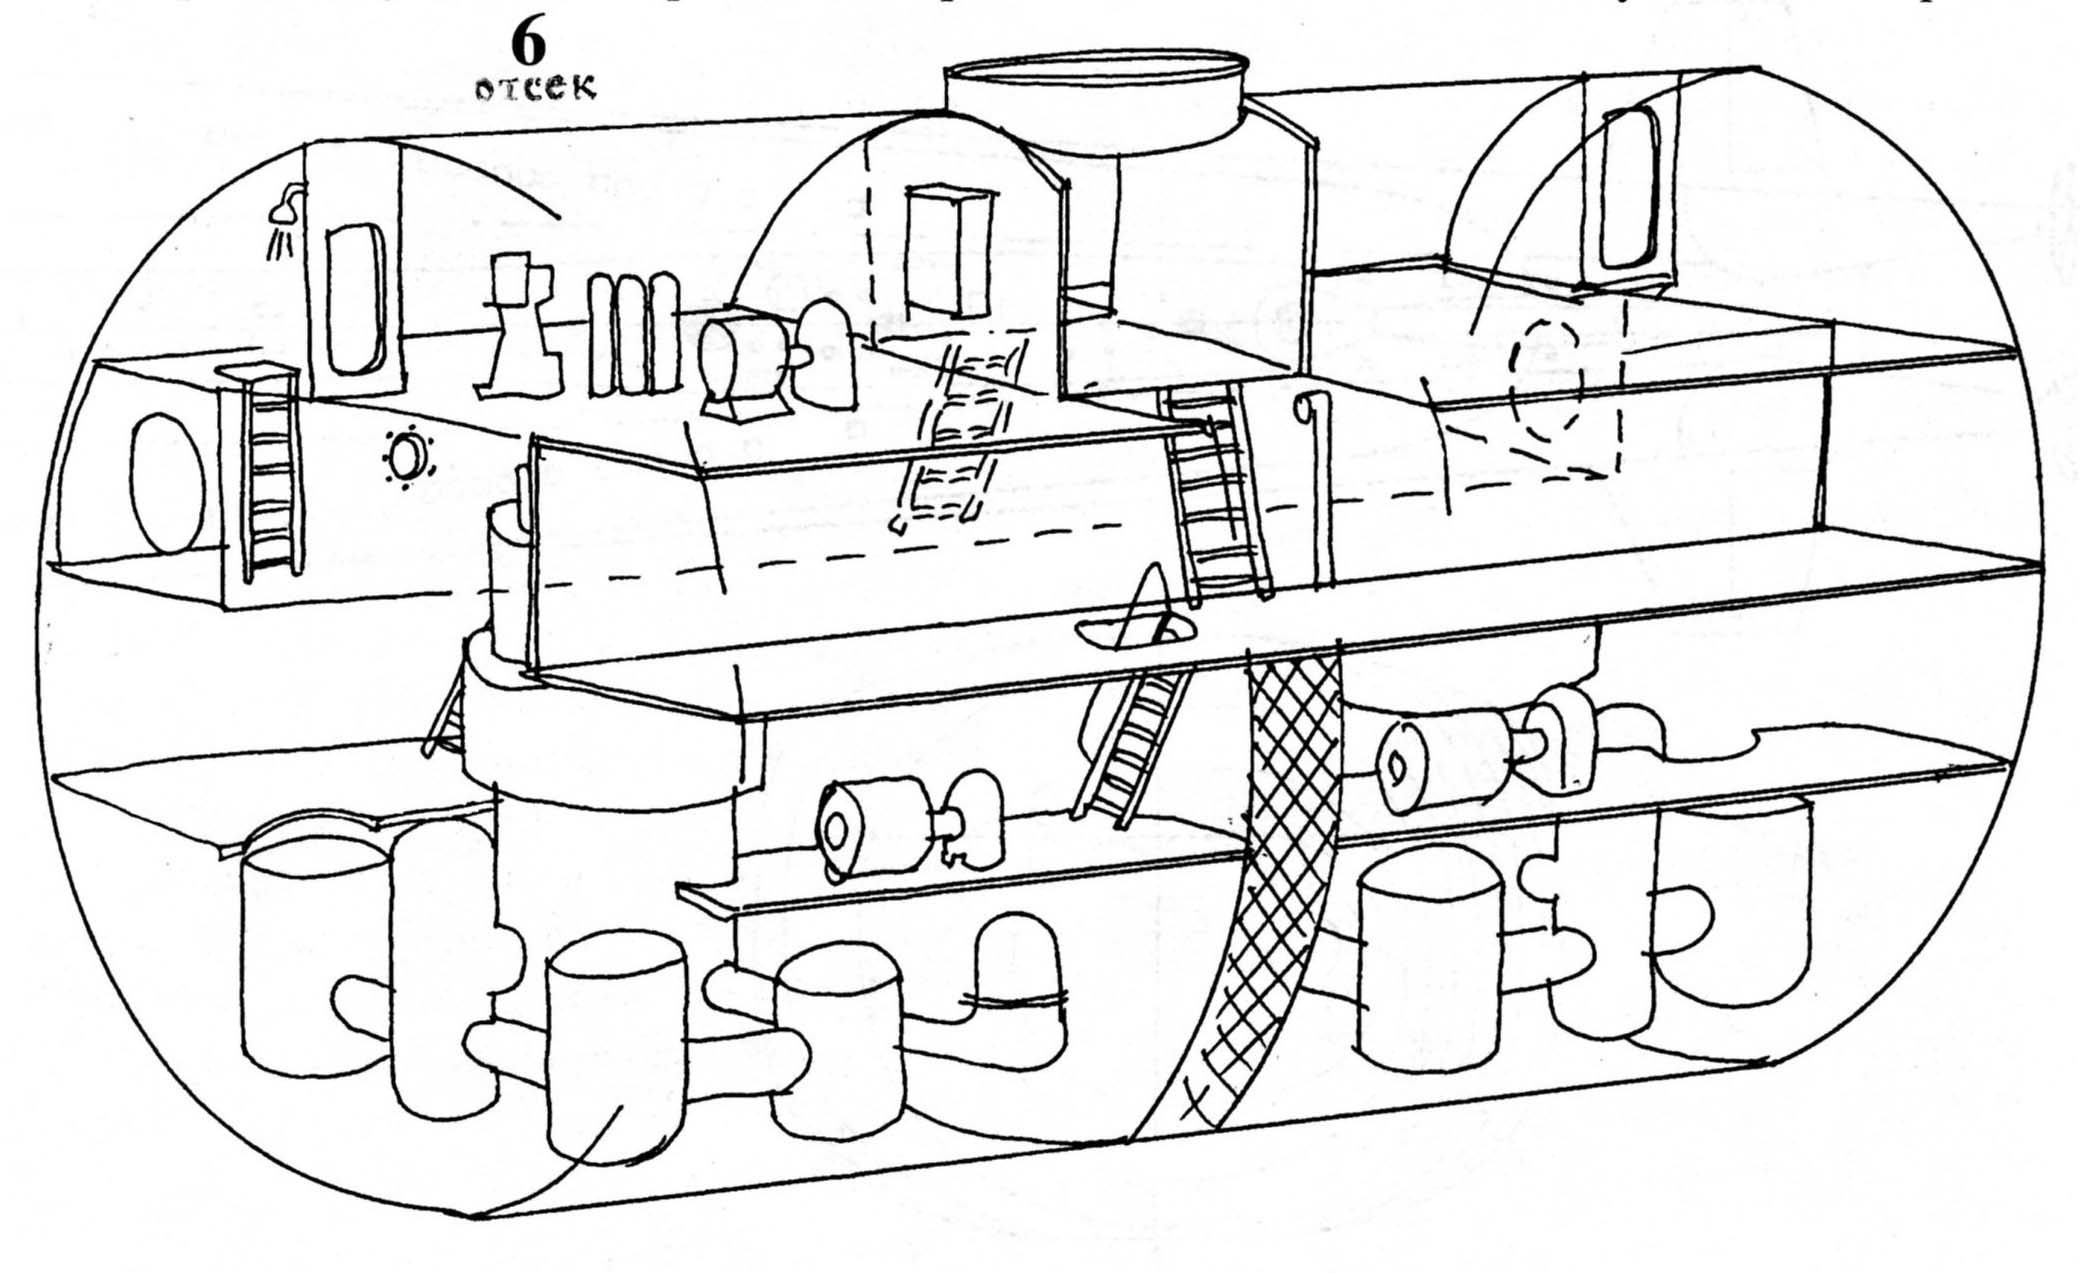 Сборка подводной лодки. Схема подводной лодки Курск. Схема отсеков подводной лодки Курск. Схема отсеков атомной подводной лодки «Курск». Схема АПЛ Курск в разрезе.